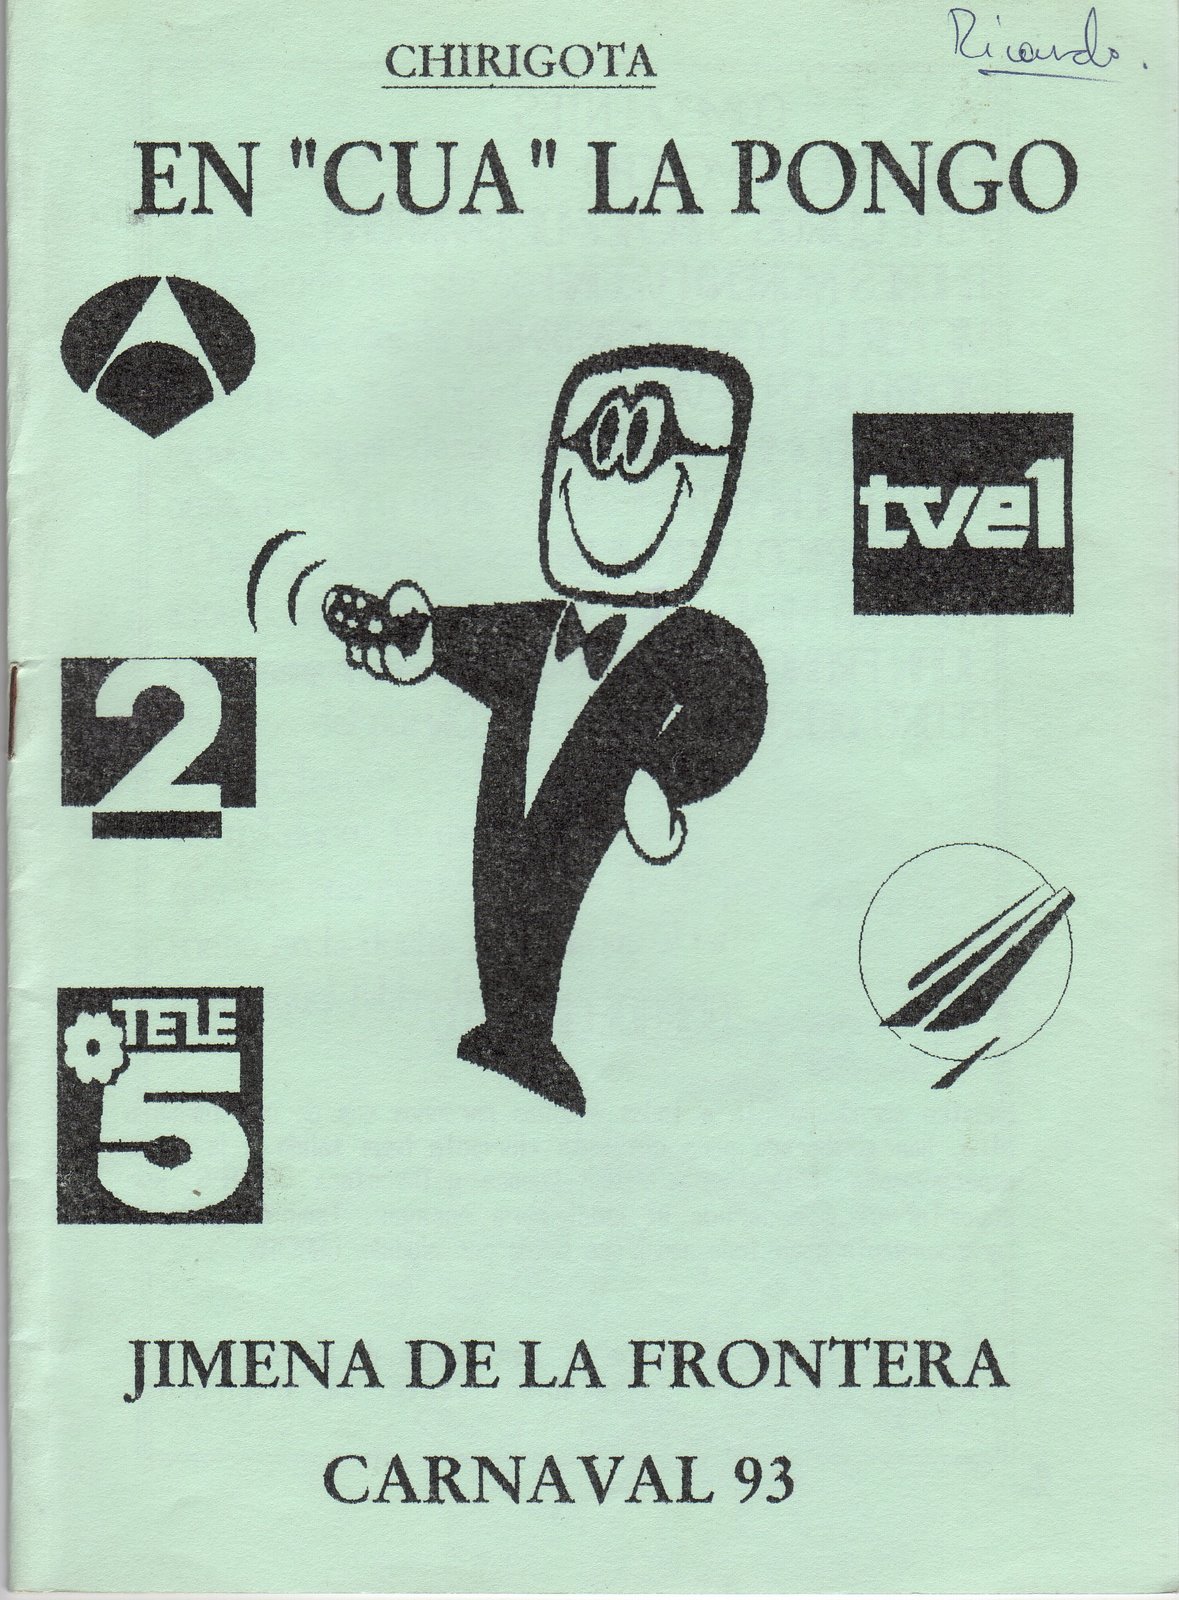 [1993+en+cua+la+pongo+libreto.jpg]